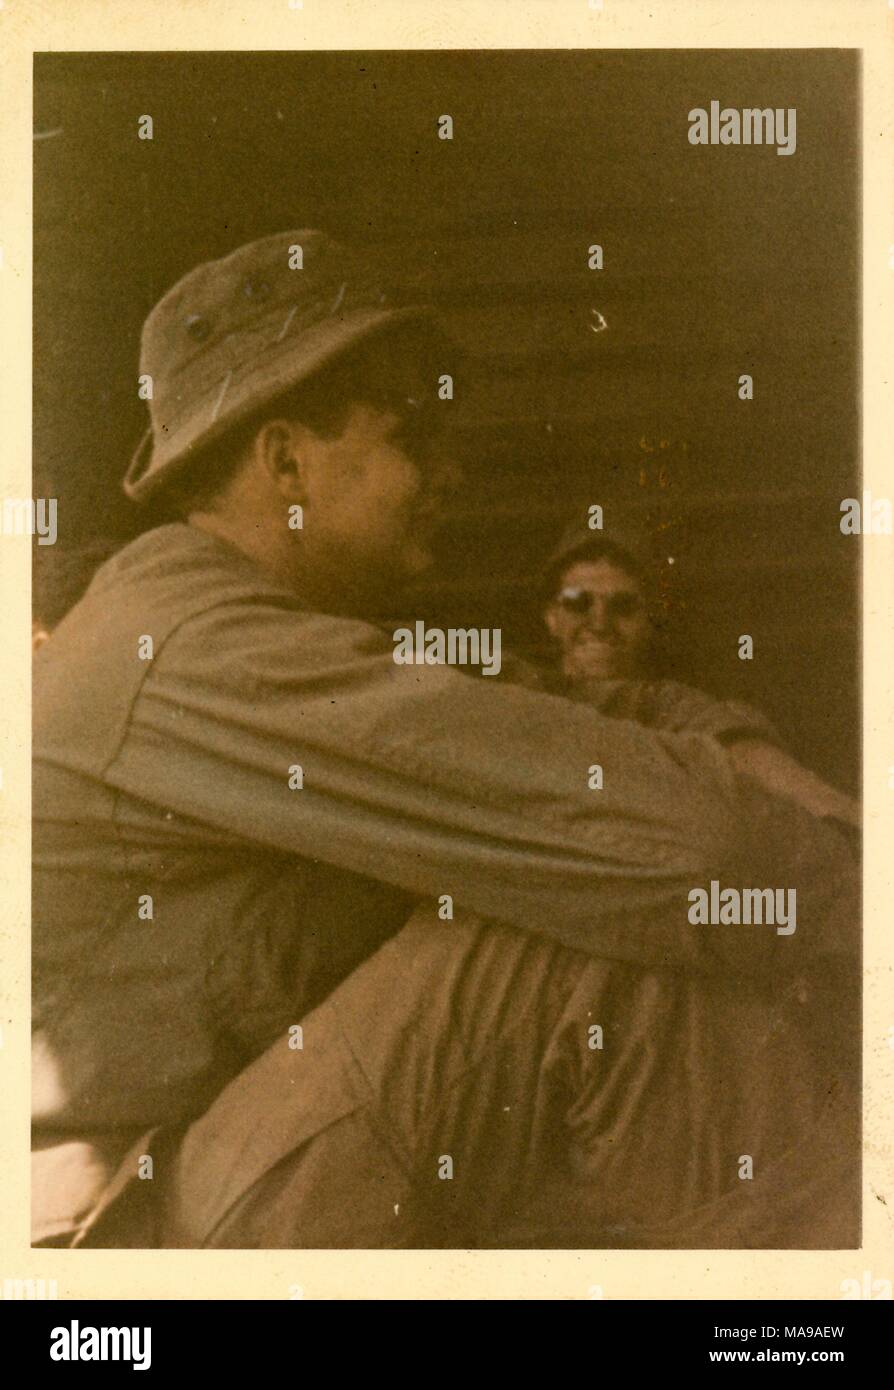 Fotografia a colori di due maschi seduti, una vista di profilo, gli altri in un colpo di testa rivolta verso la telecamera, sia militare che indossa fatiche, cappelli e occhiali da sole, fotografato in Vietnam durante la Guerra del Vietnam (1955-1975), 1971. () Foto Stock